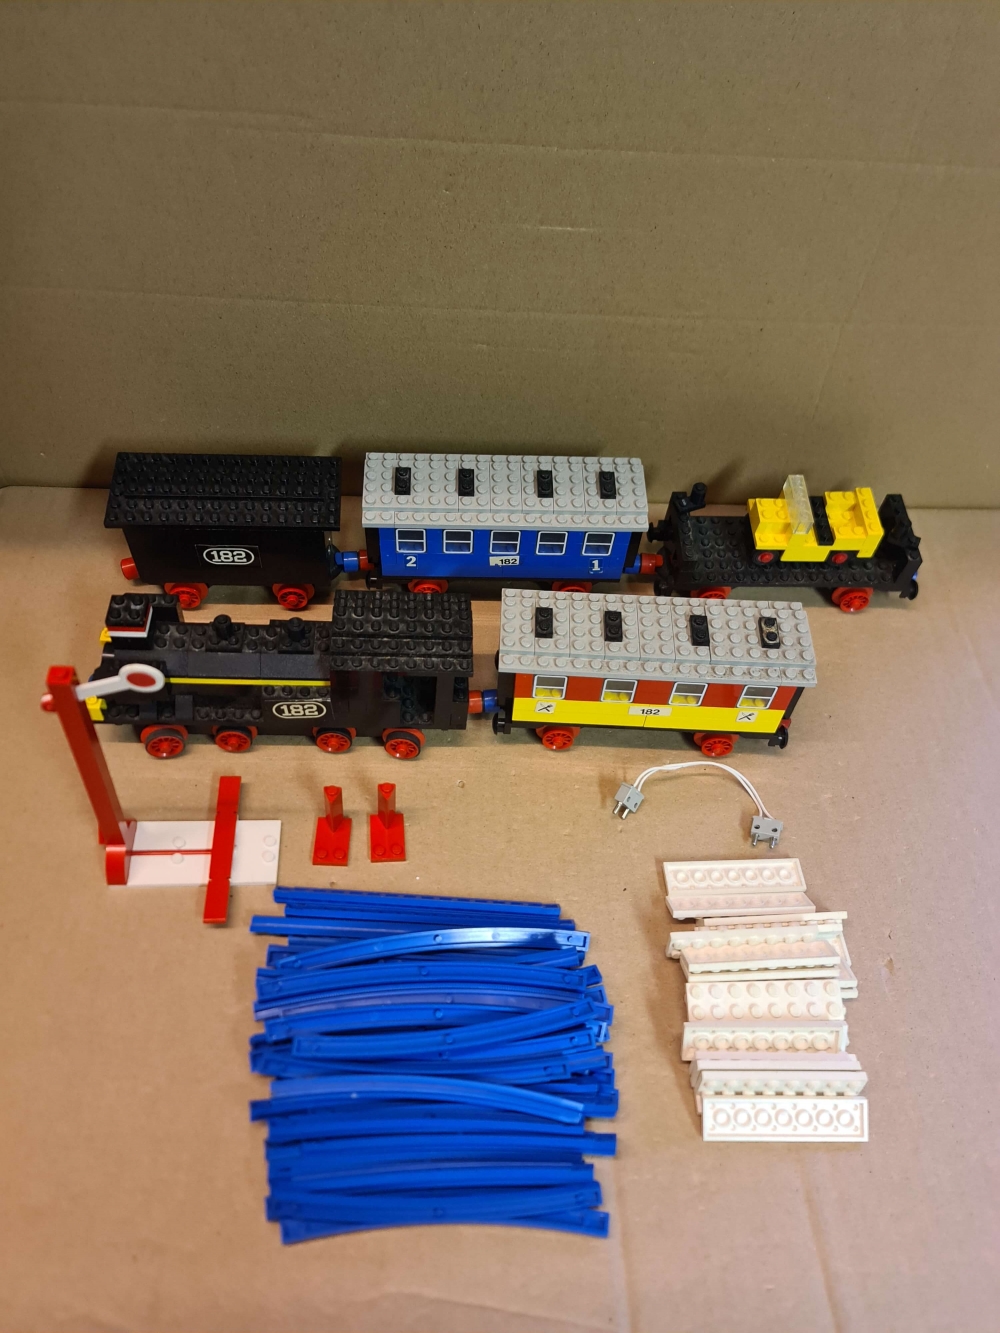 Sett 182 fra Lego Train : 4.5V serien.
Komplett uten manual.
Pent sett under støv. Alle klistremerker på.